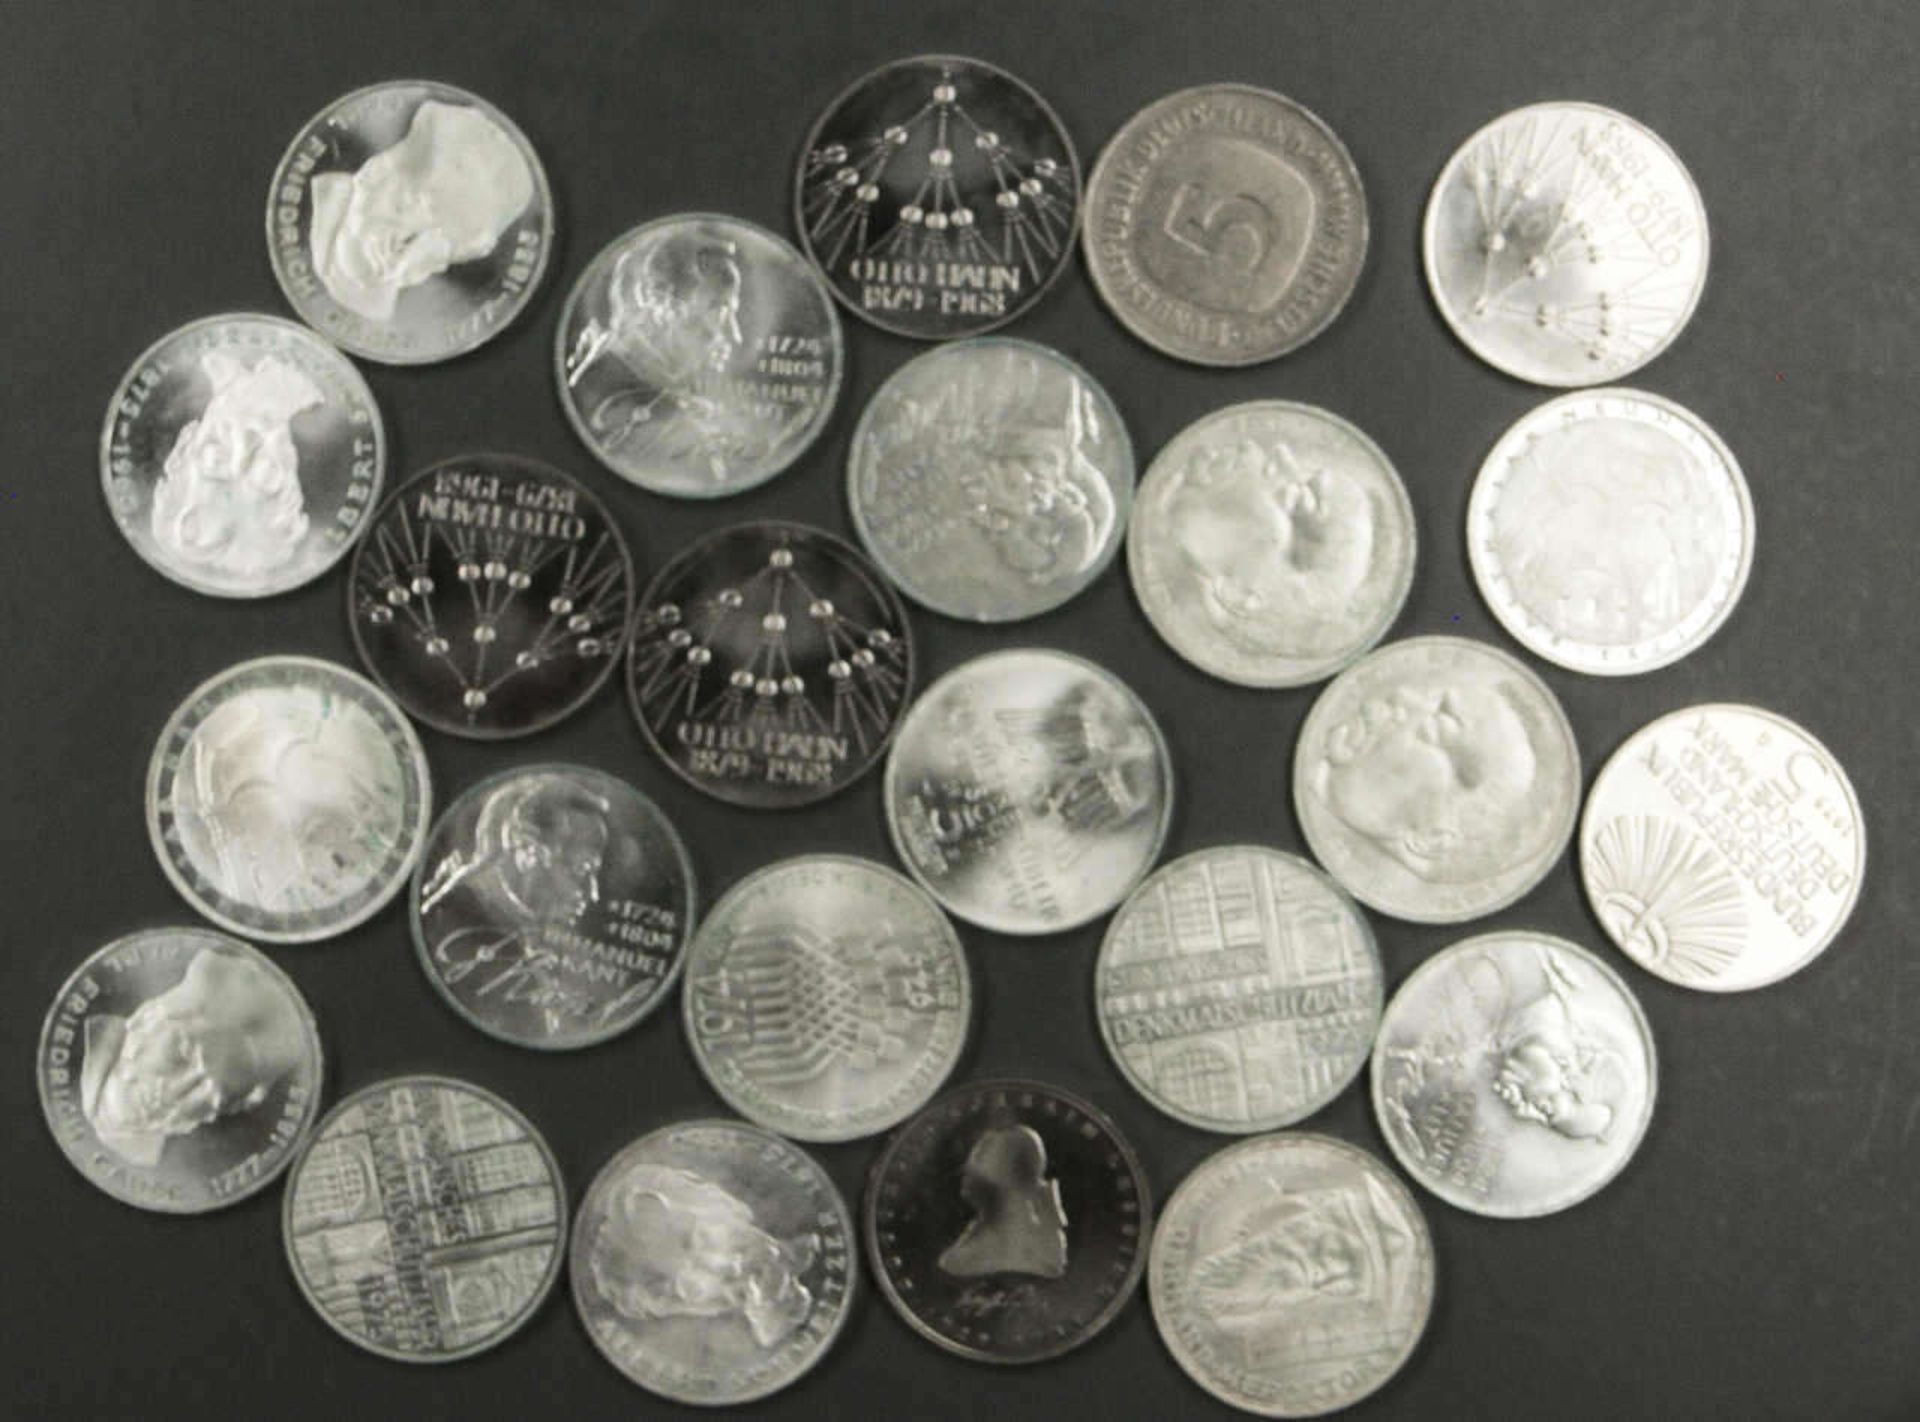 BRD, Lot von 24 x 5.- Mark - Münzen. Verschiedene Jahrgänge. Erhaltung: ss-vz. Germany, Lot of 24